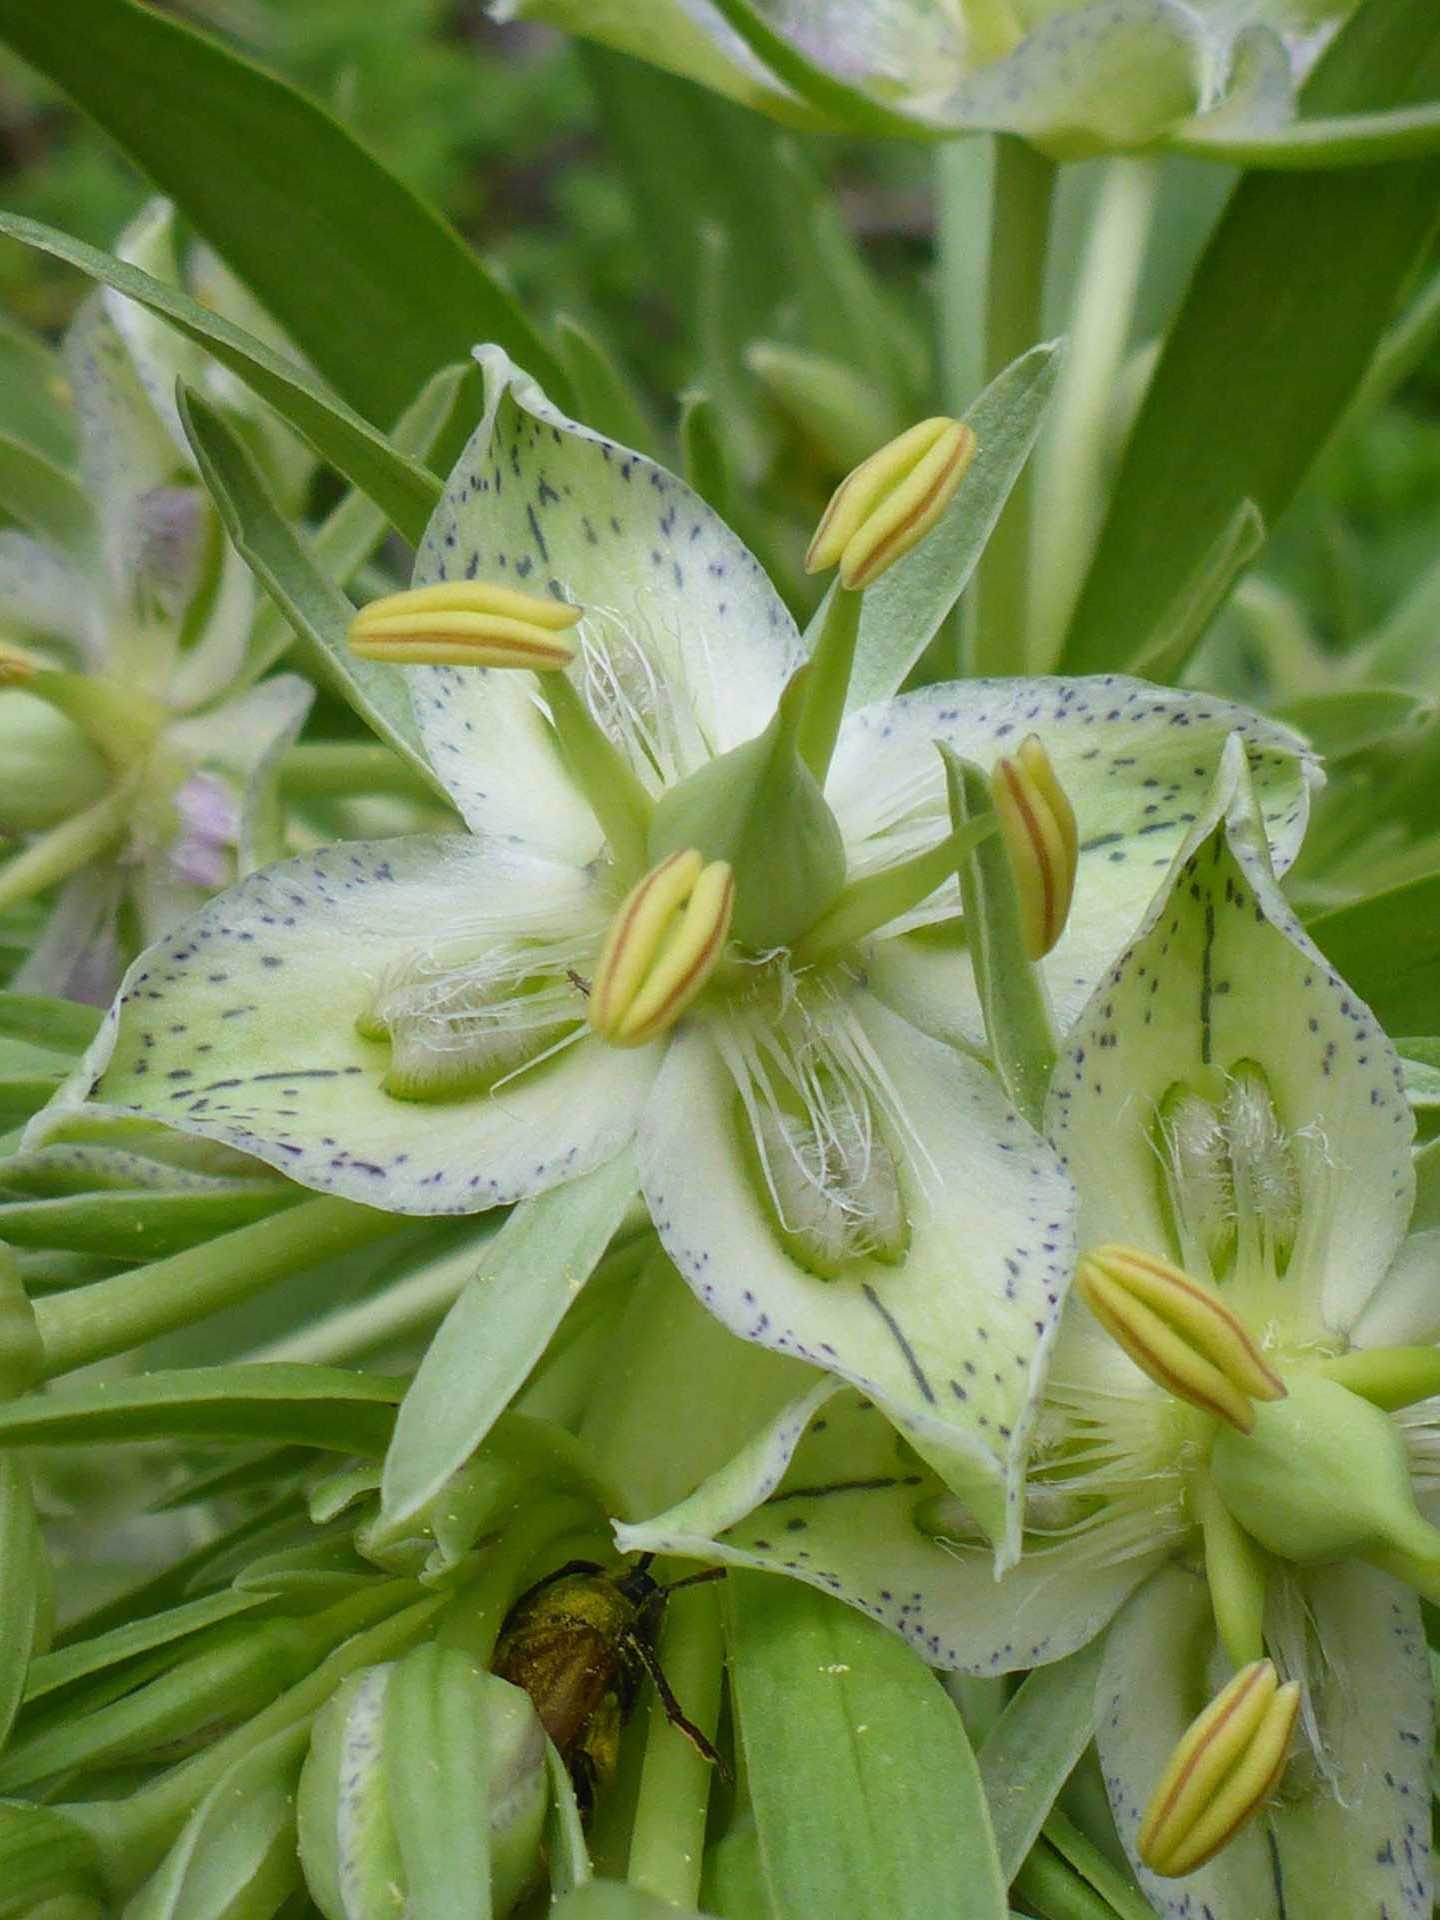 Monumant plant close-up. D. Burk.